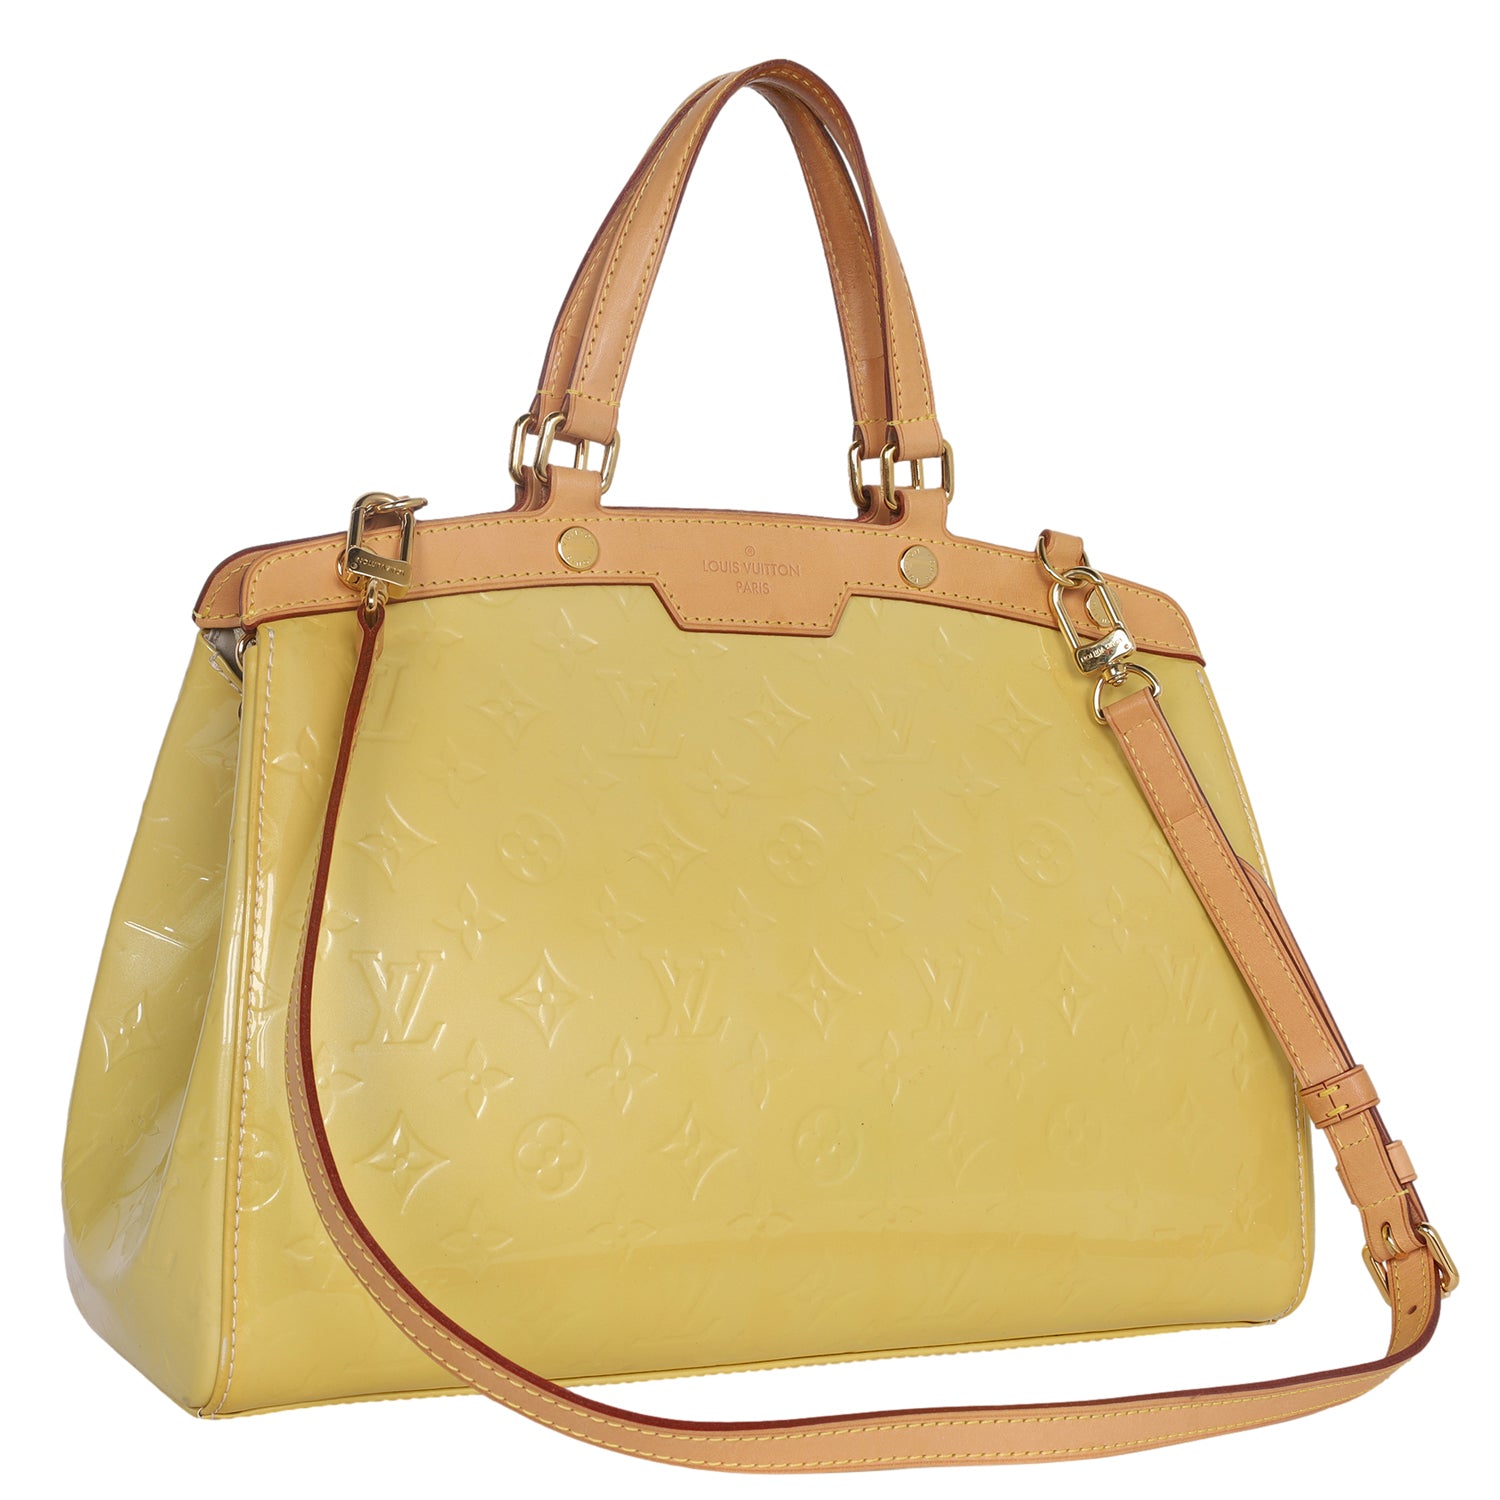 Louis Vuitton, Bags, Authentic Louis Vuitton Vernis Handbag Purse Gold  Yellow Patent Leather